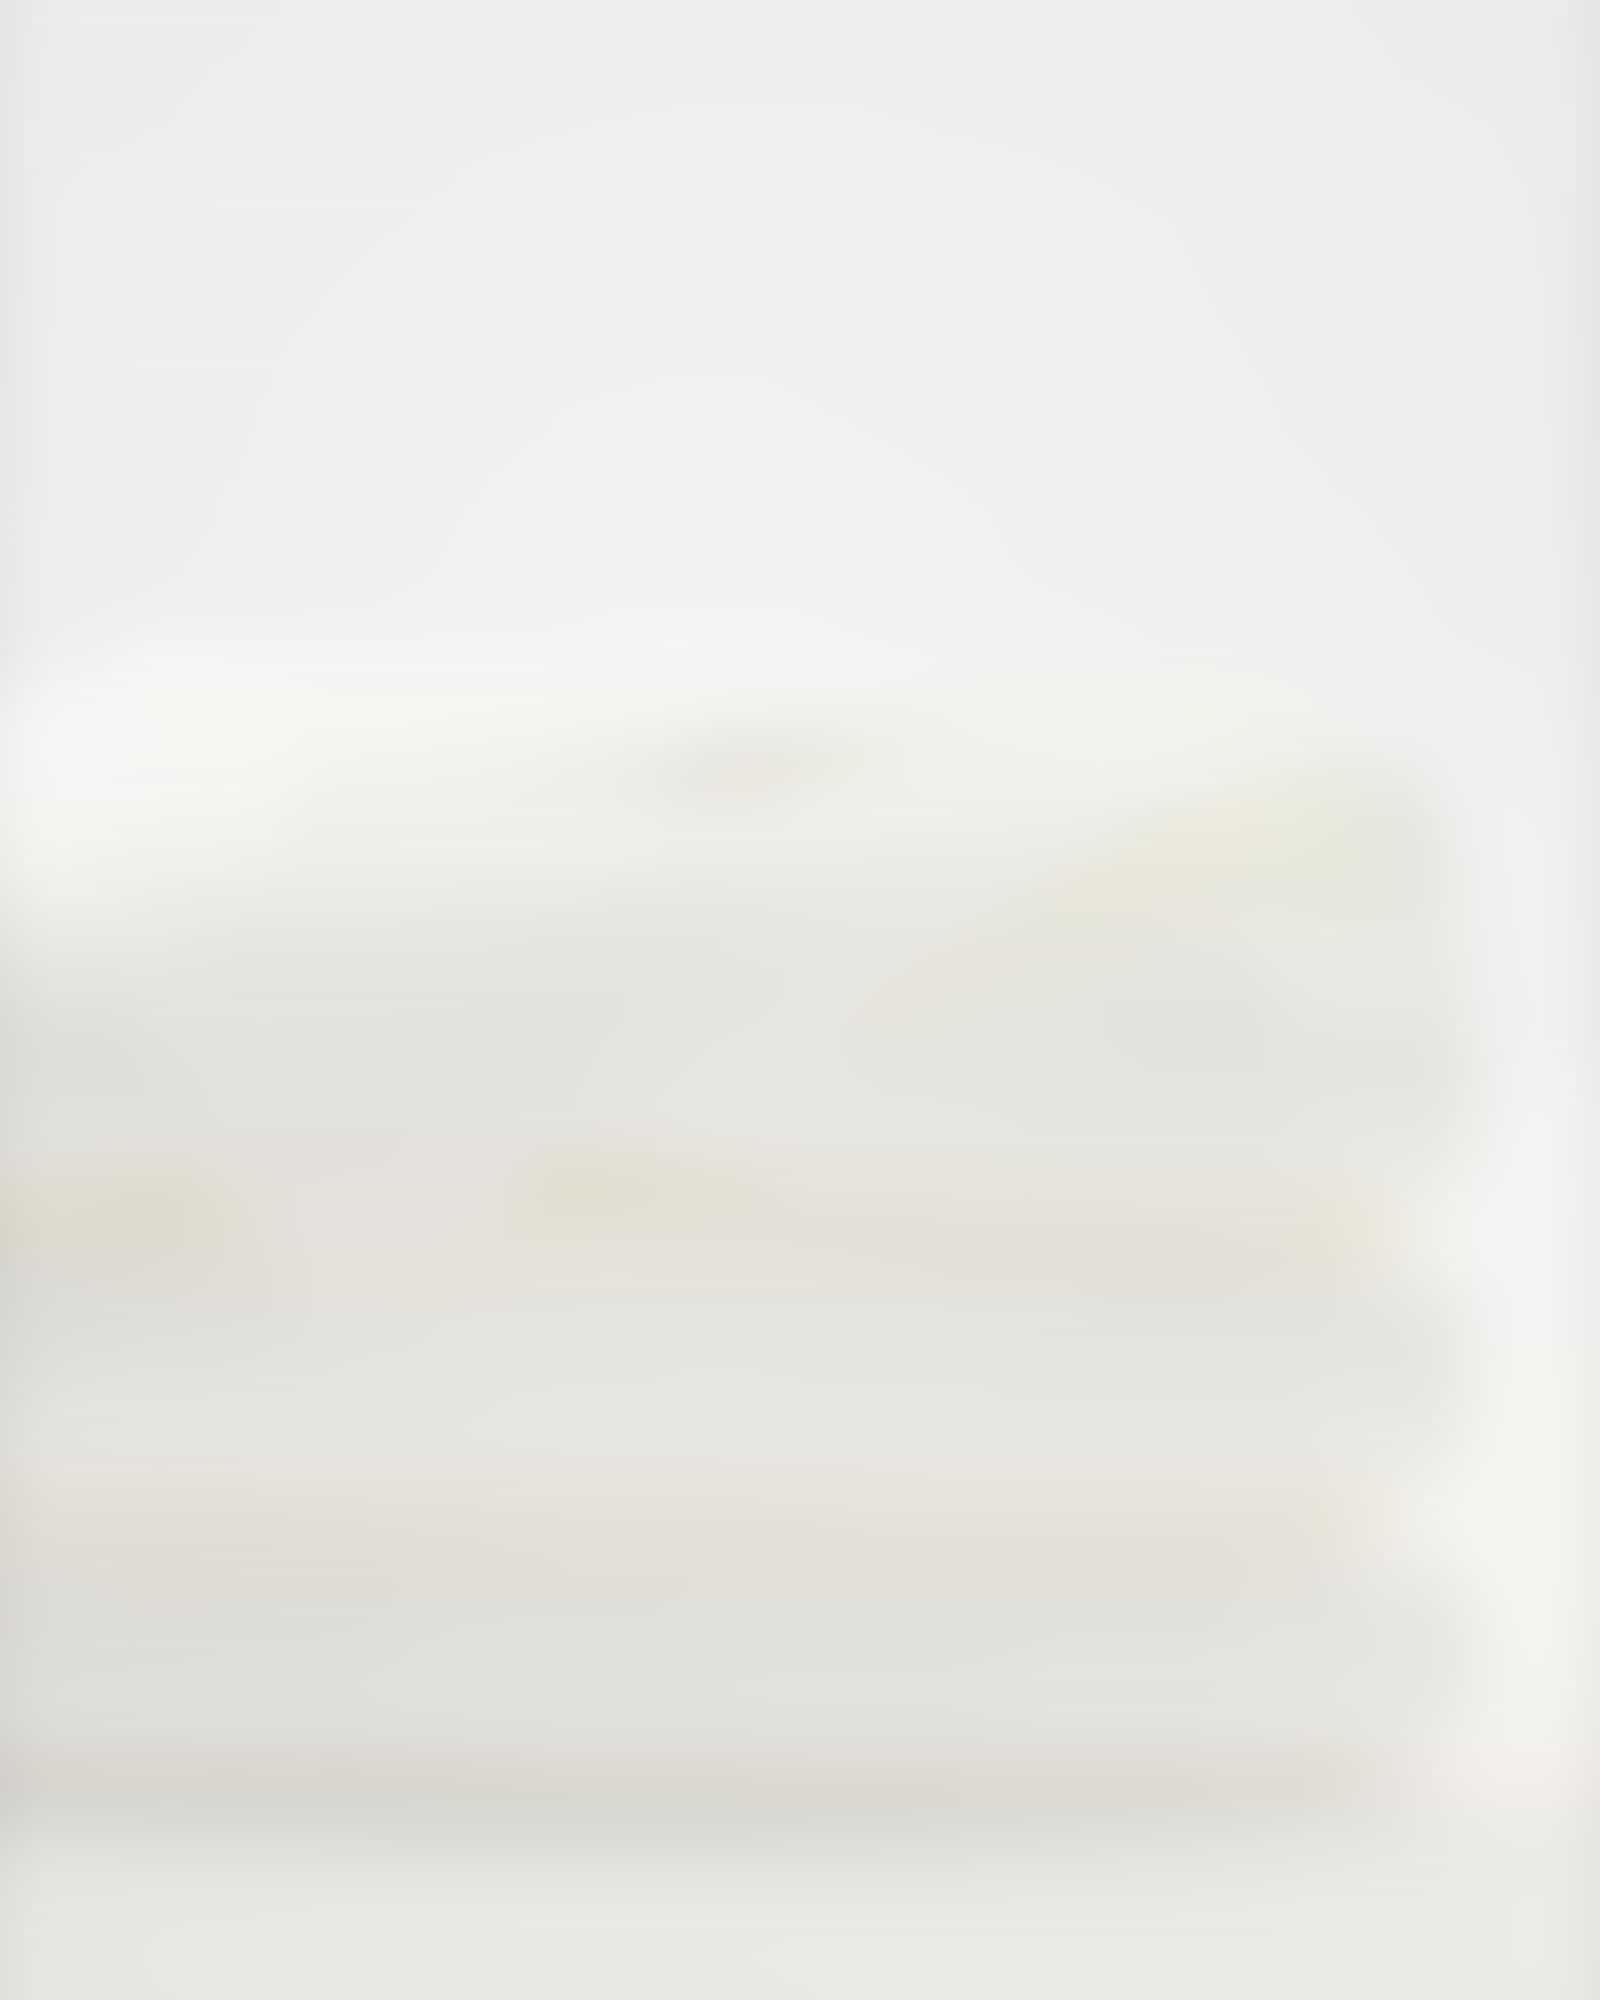 Möve - Superwuschel - Farbe: snow - 001 (0-1725/8775) - Duschtuch 80x150 cm Detailbild 2